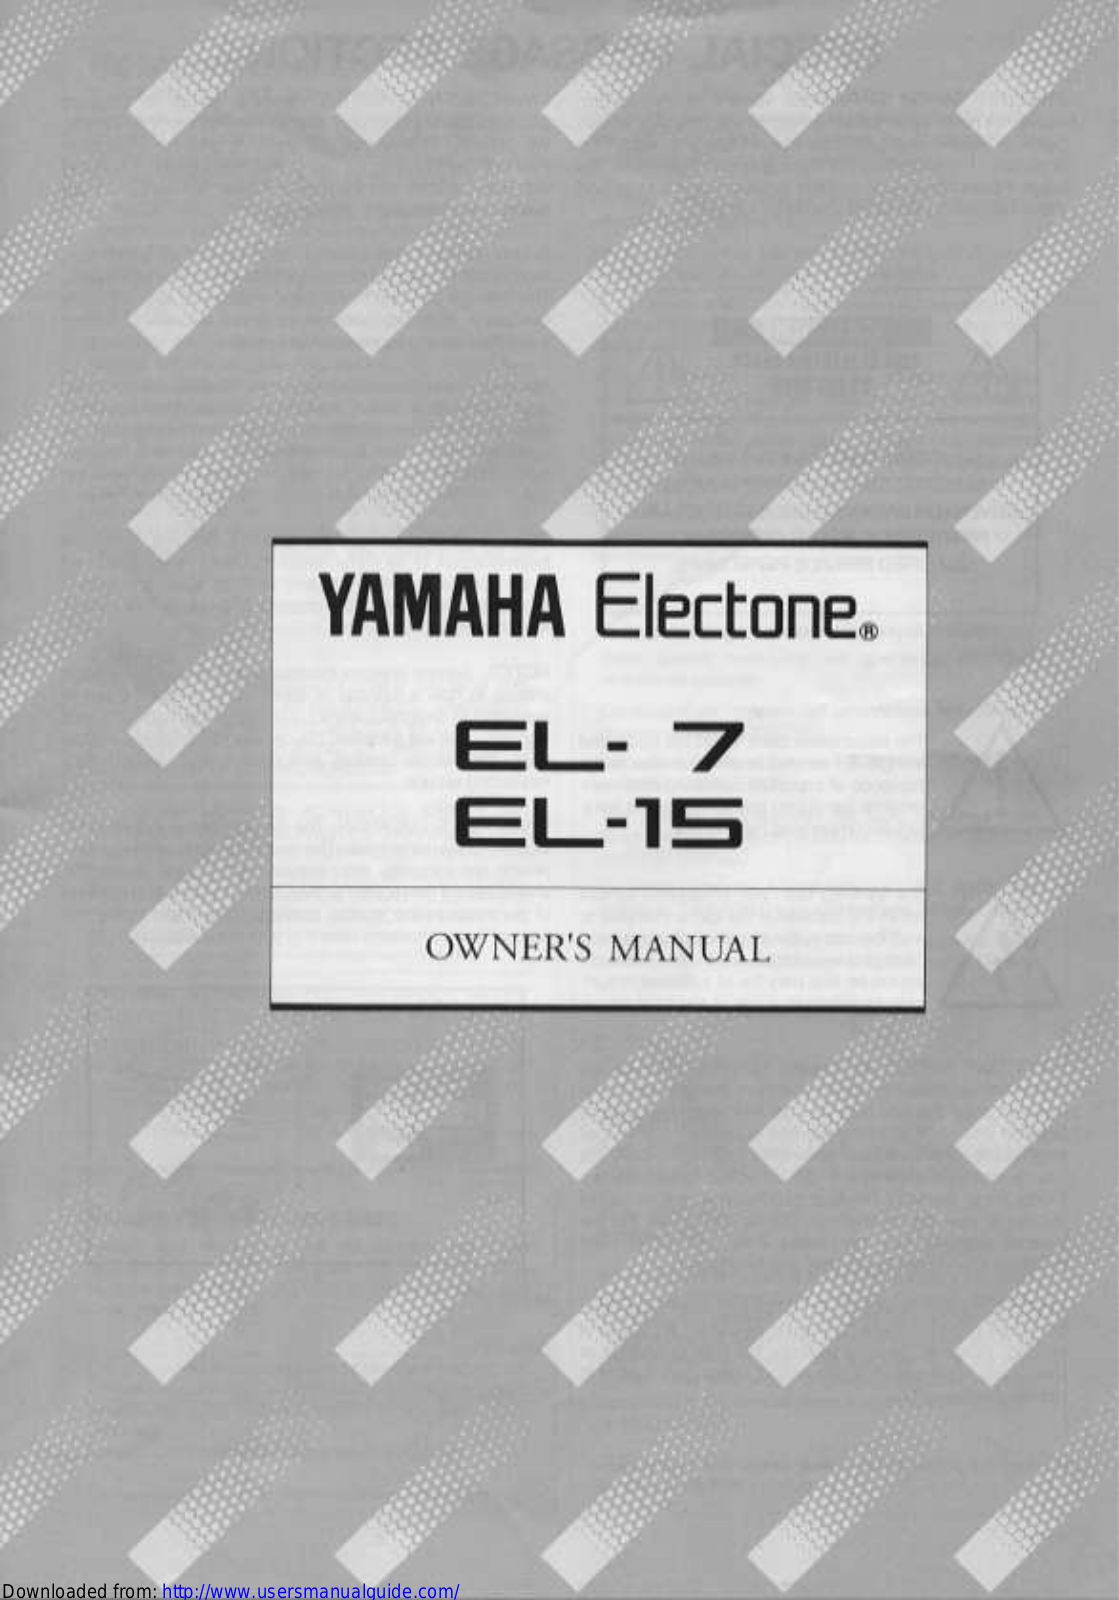 Yamaha Audio EL-7 (Image), EL-15 (Image) User Manual